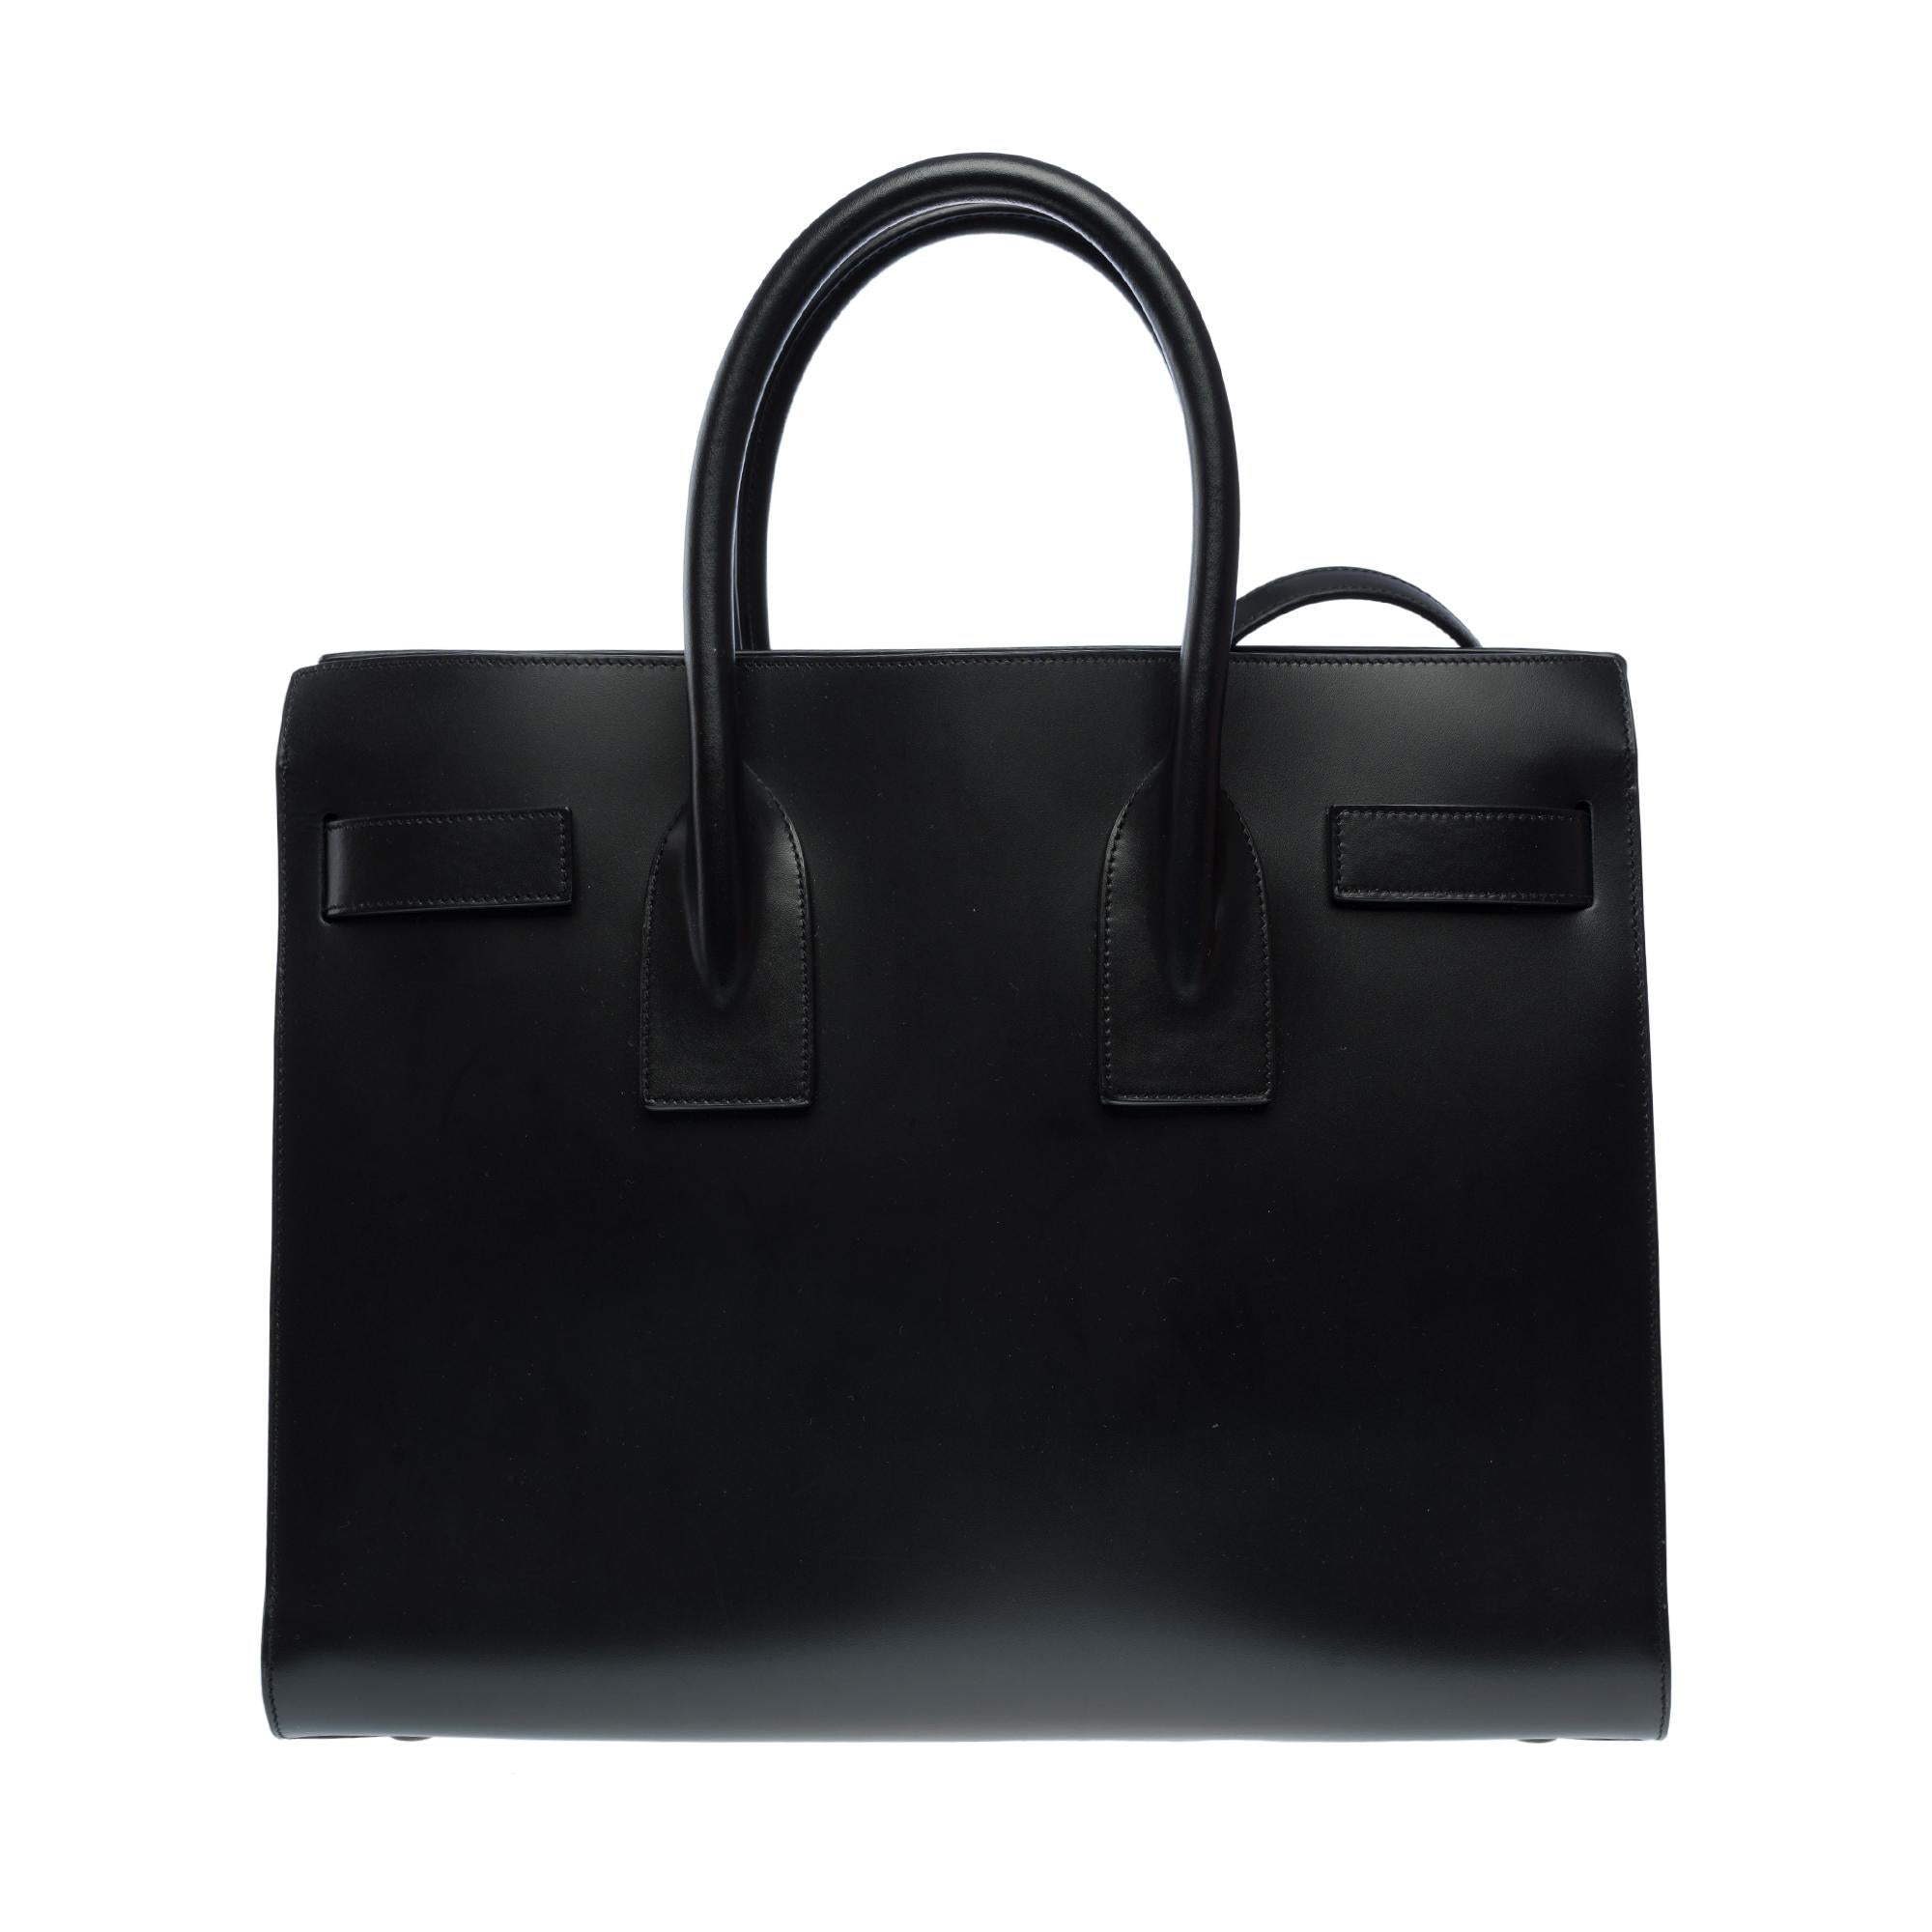 Saint Laurent Sac de Jour Small size handbag strap in black Box calf leather For Sale 1